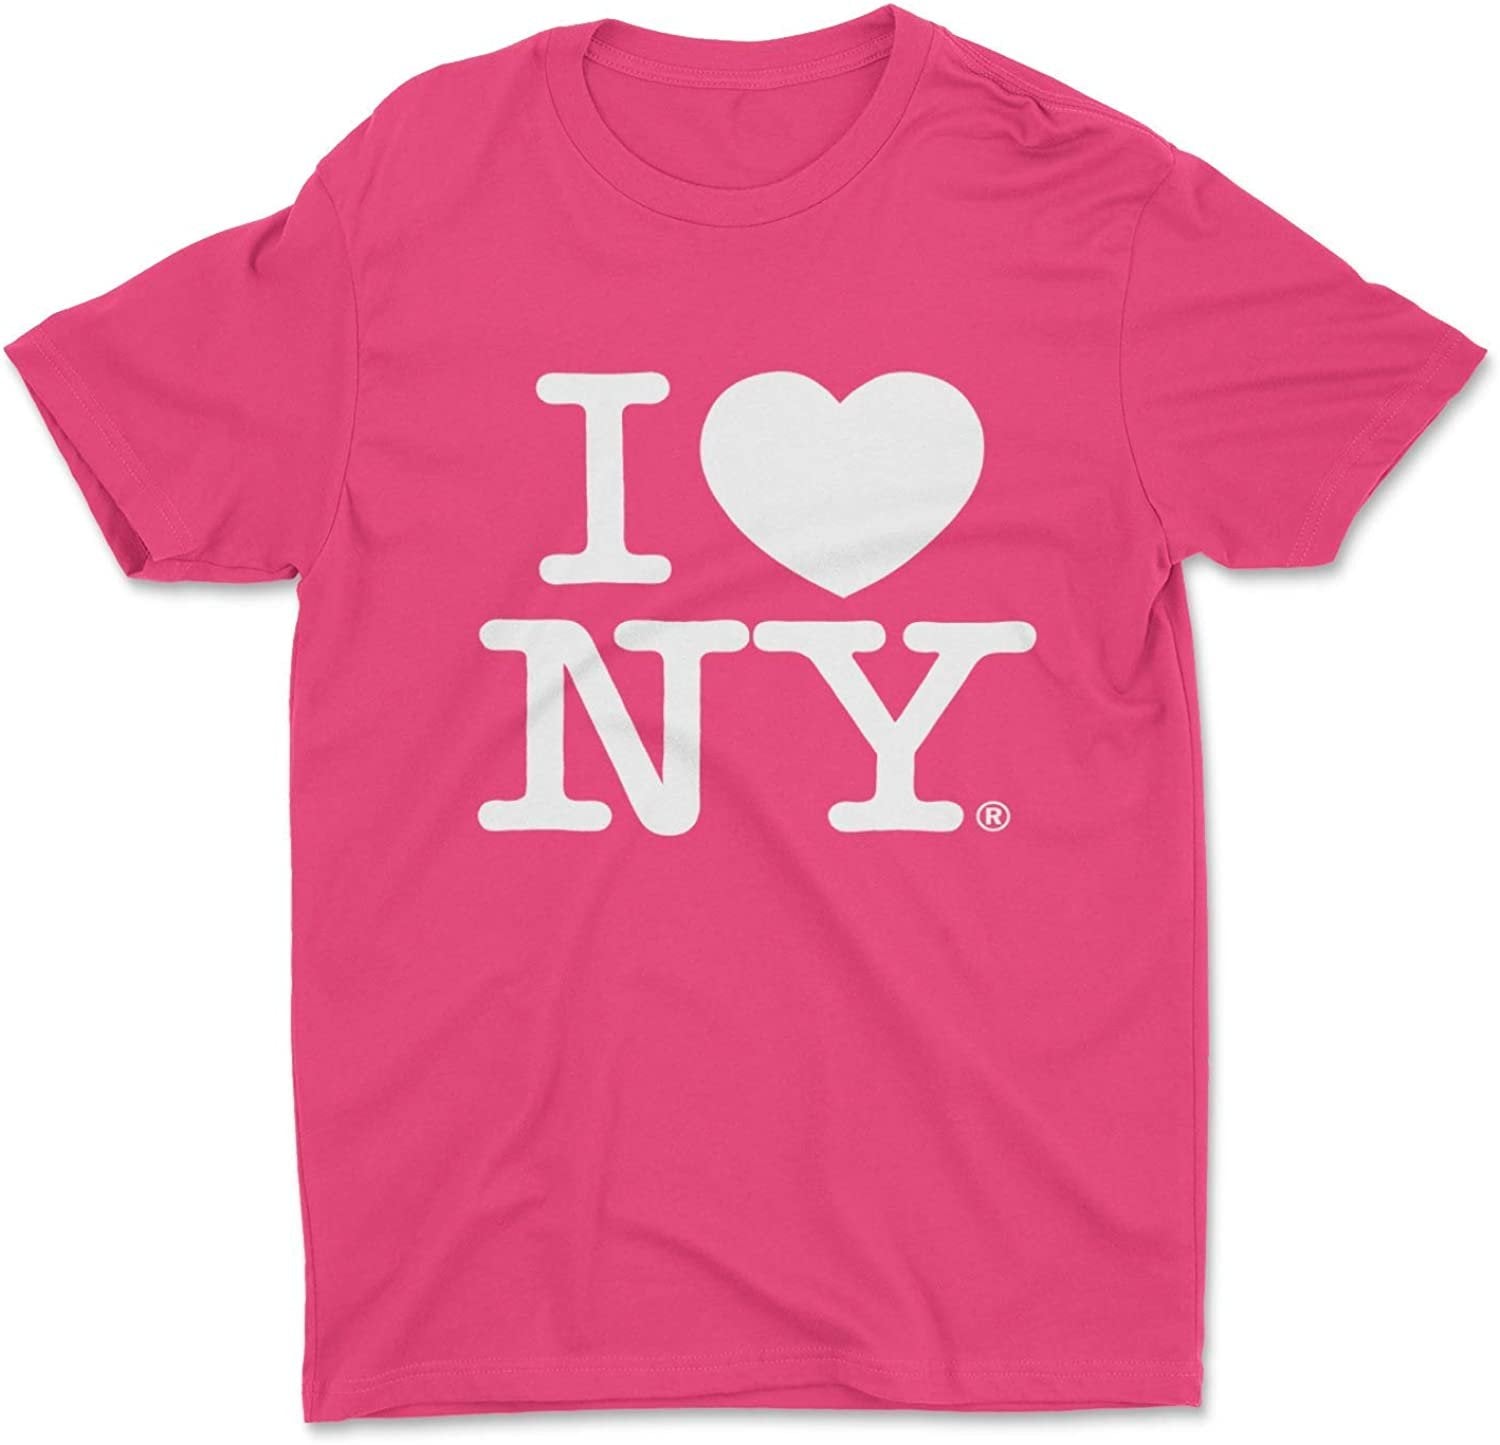 Ich liebe NY scherzt T-Stück Pink